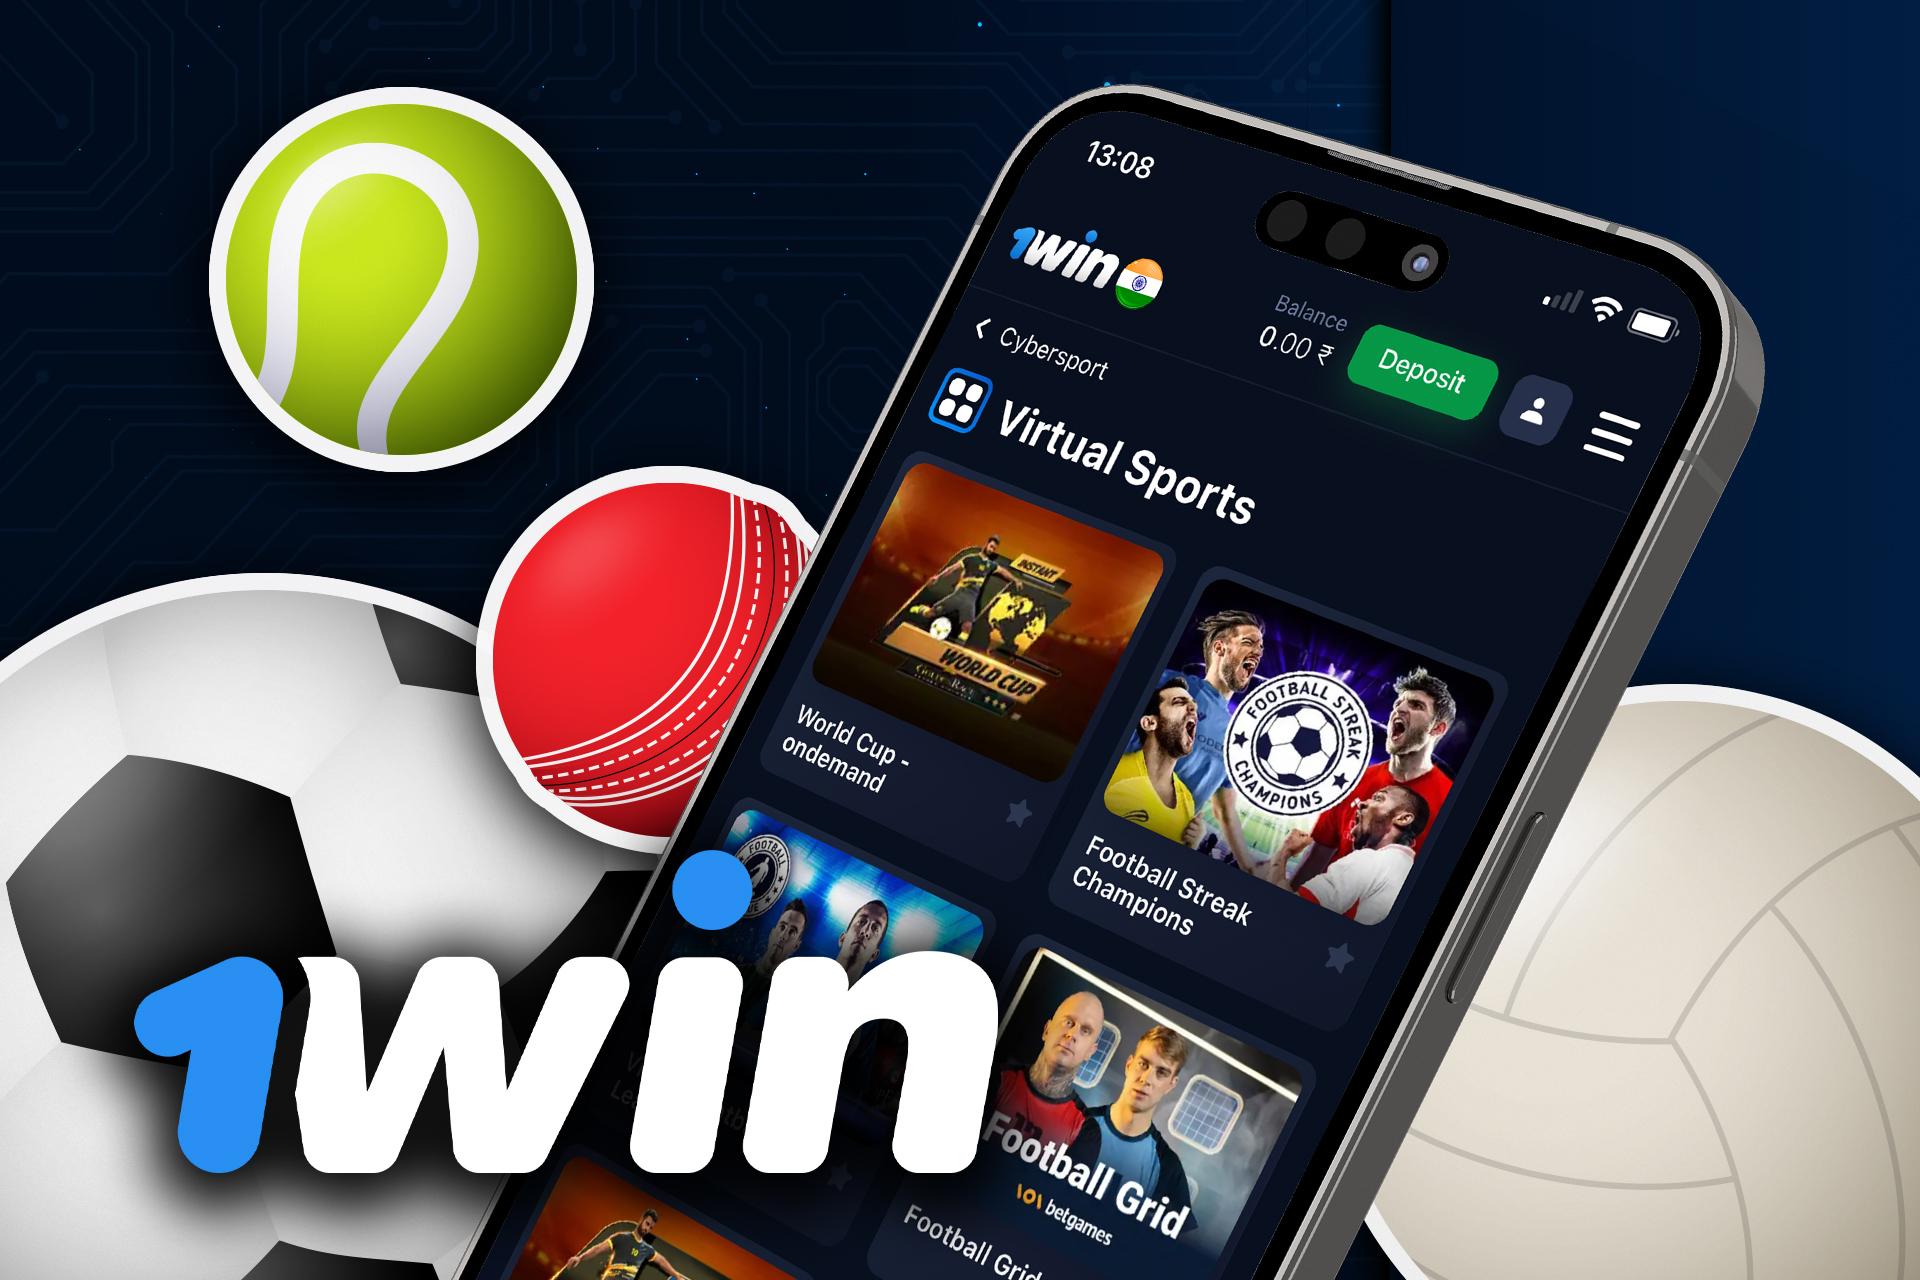 Puede encontrar mercados deportivos virtuales en las apuestas deportivas para móvil de 1win.